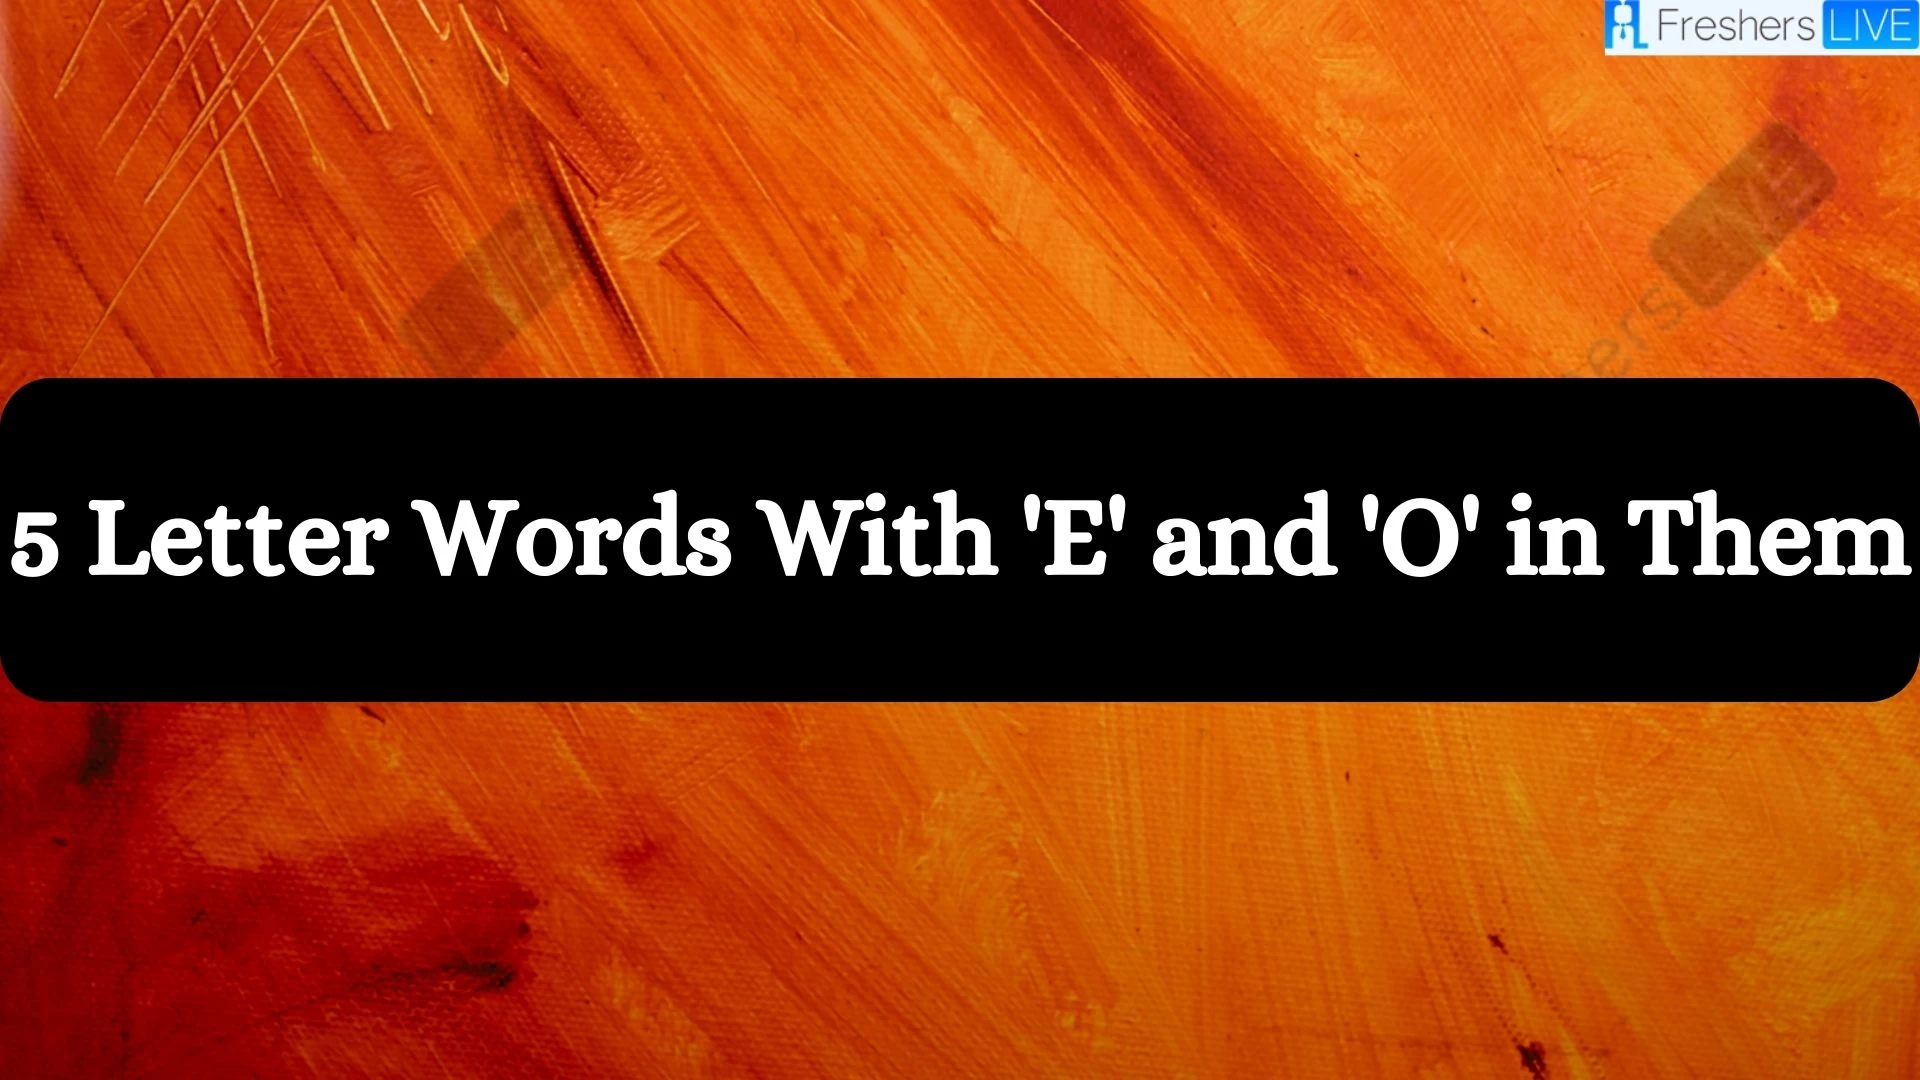 Palabras de 5 letras que contengan "E" y "O".